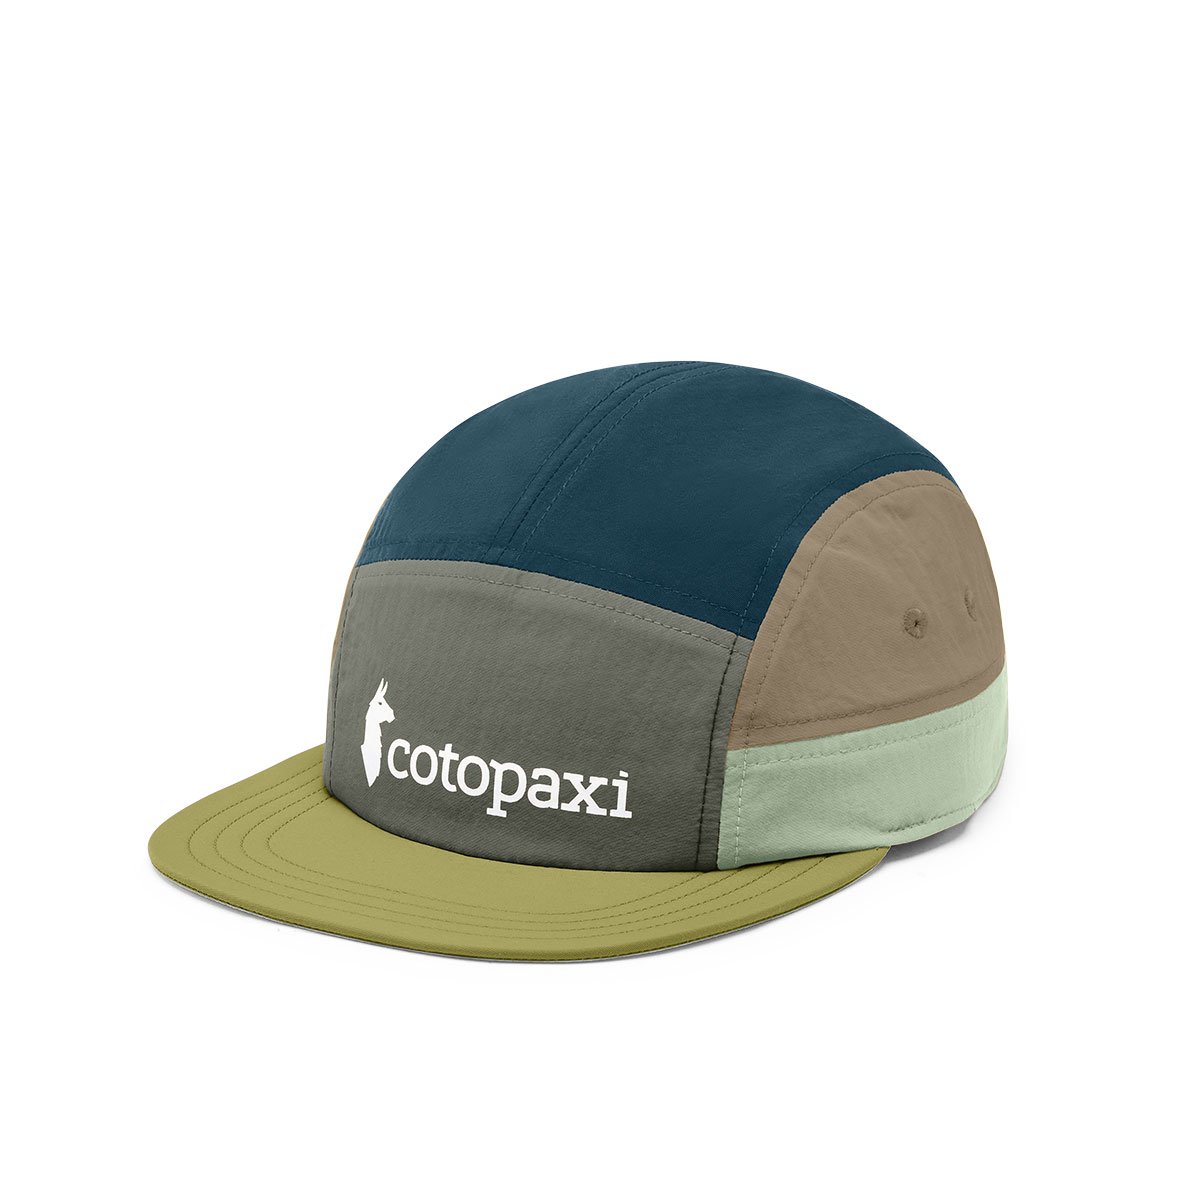 Cotopaxi Tech 5 - Panel Hat